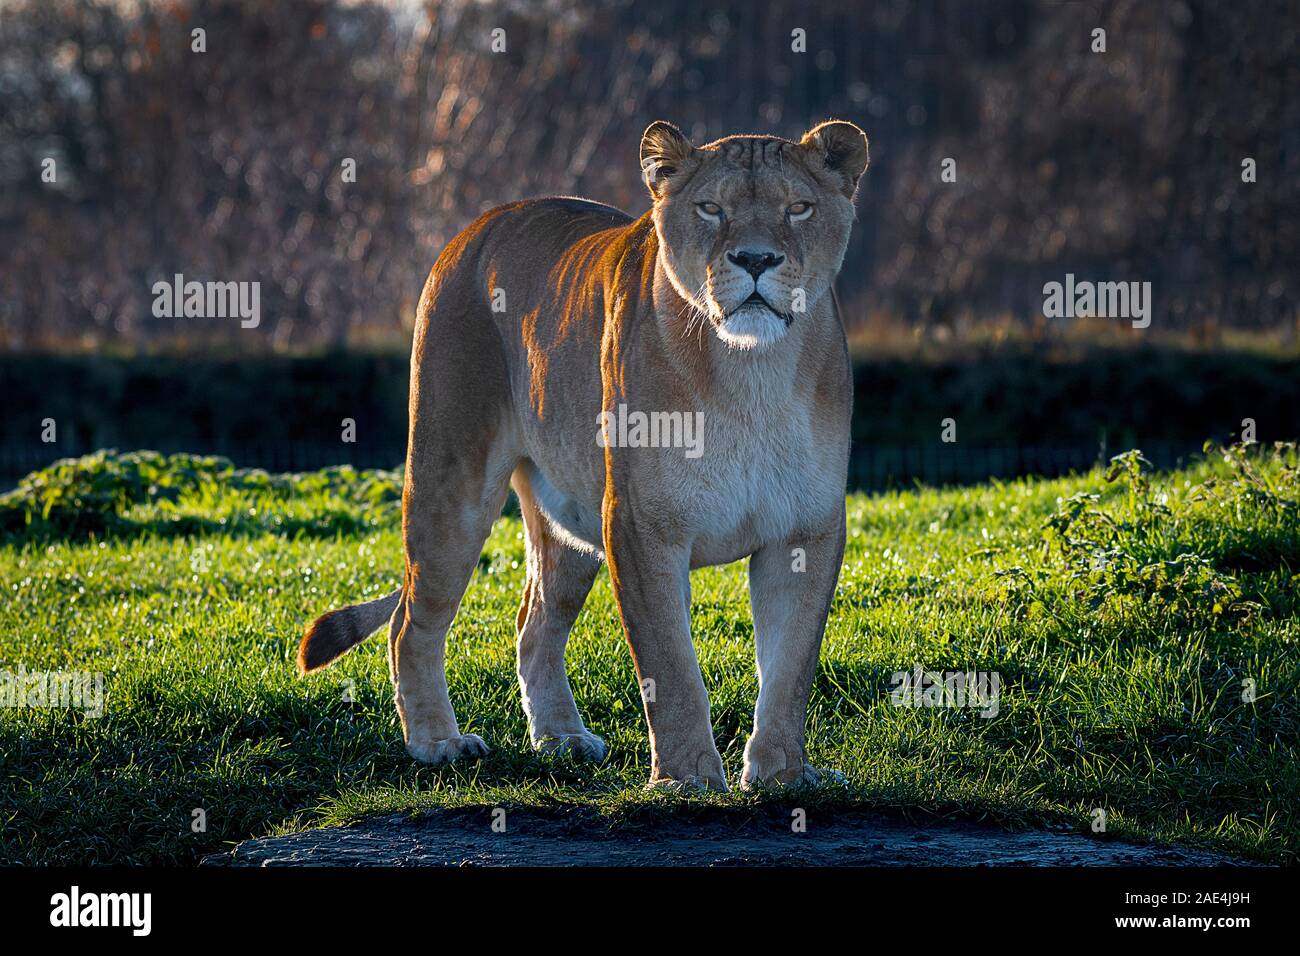 Una leona, iluminación posterior, aguarda en la cámara que se encuentra en la hierba Foto de stock